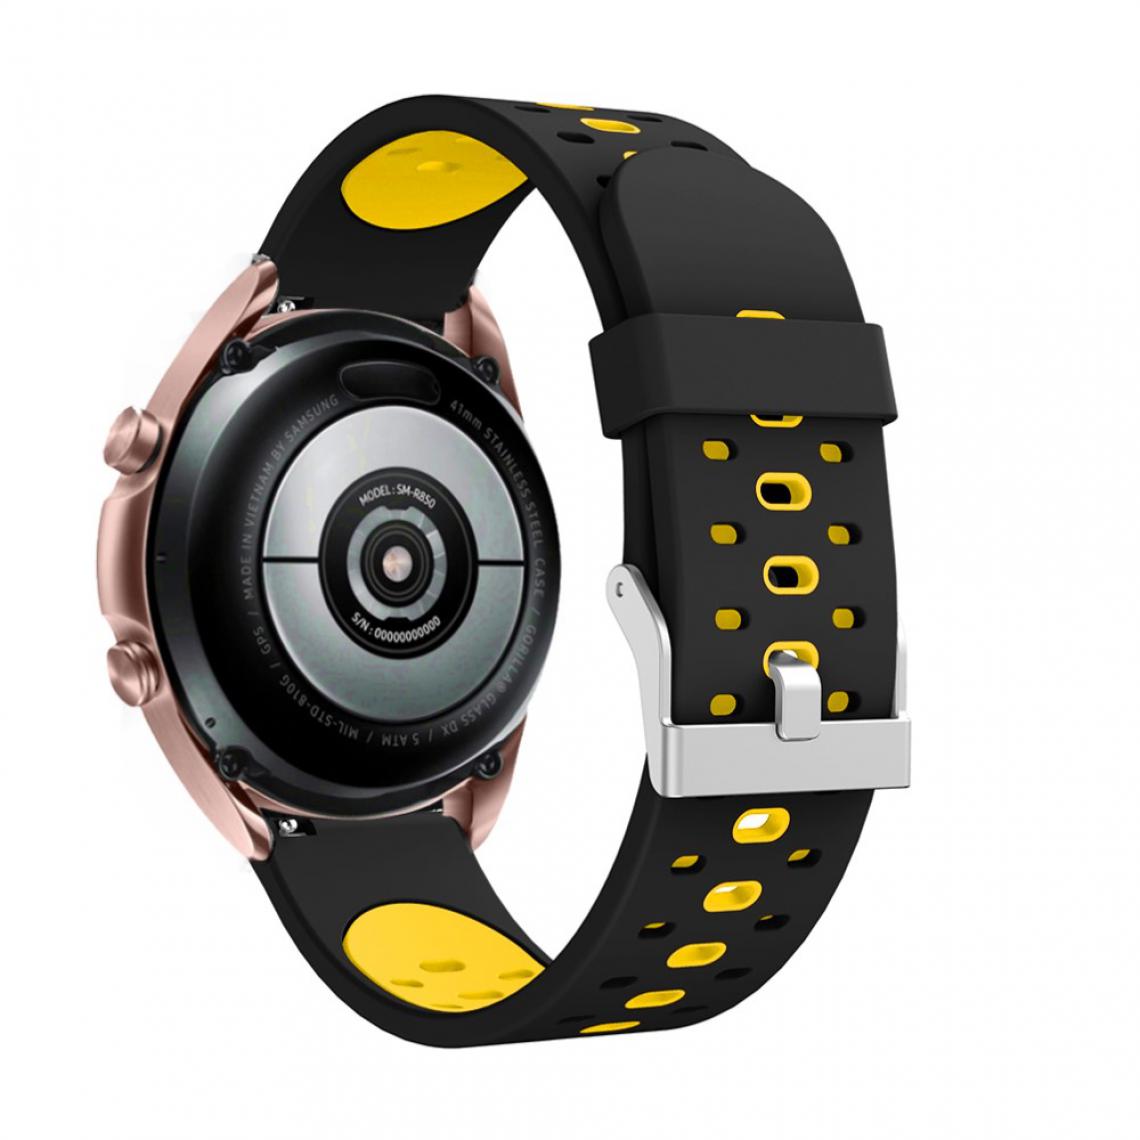 Other - Bracelet en silicone 20 mm bicolore noir/jaune pour votre Samsung Galaxy Watch3 41mm - Accessoires bracelet connecté